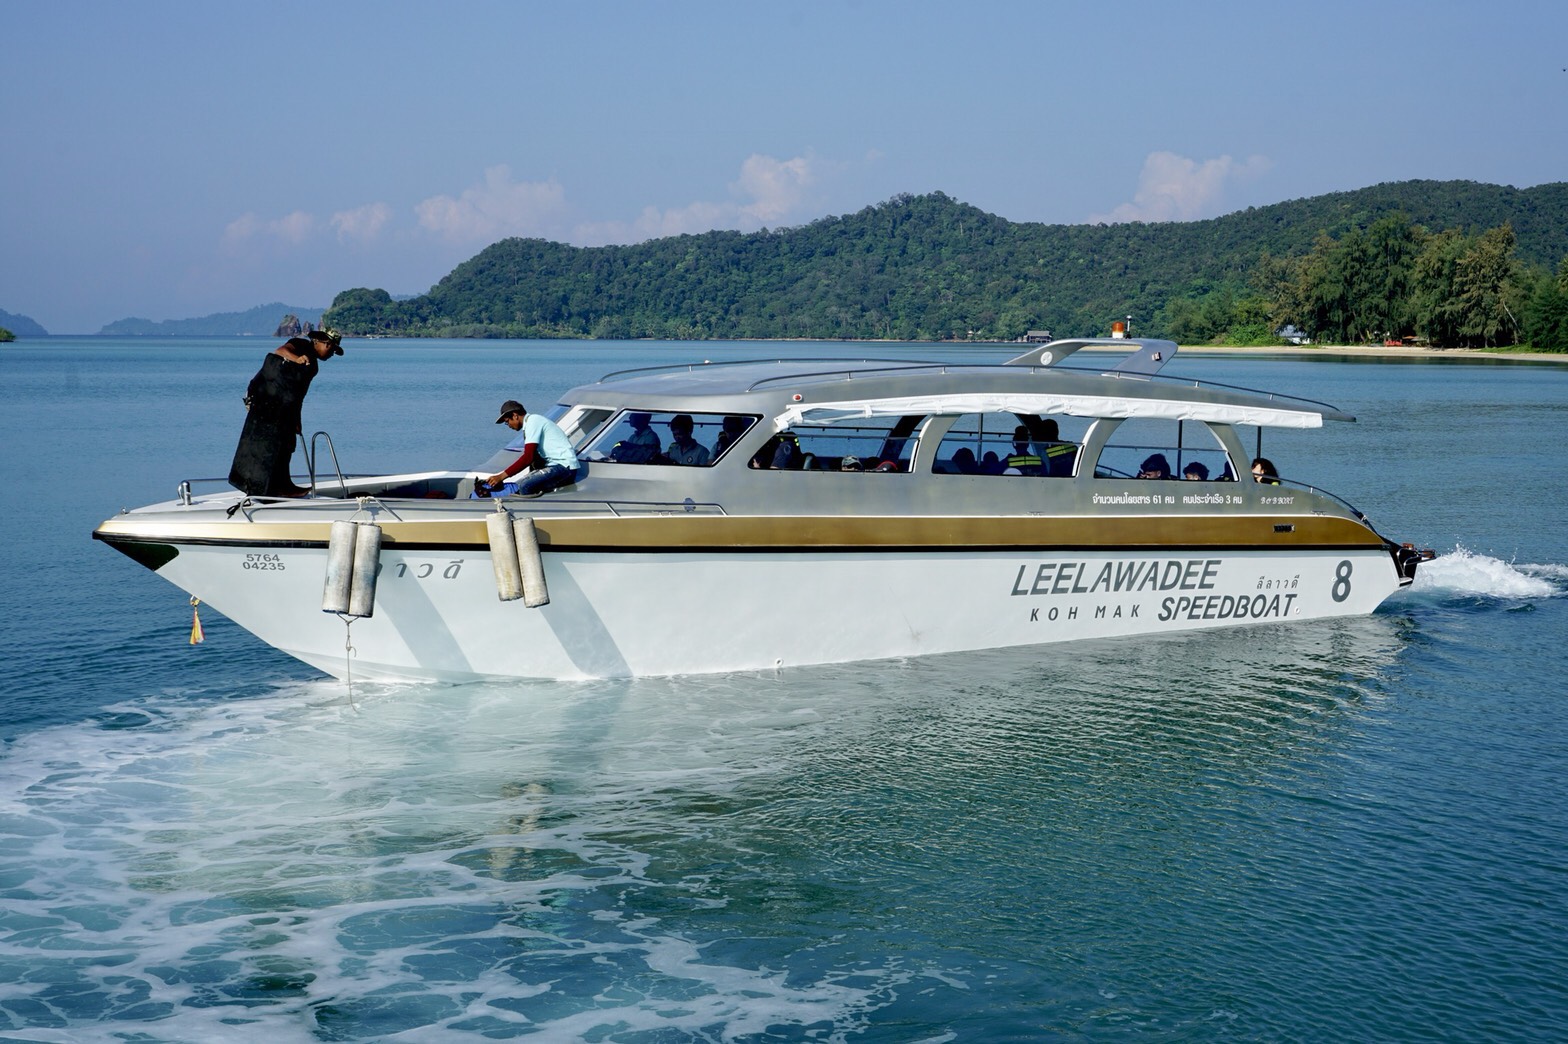 ลีลาวดี เกาะหมาก สปีดโบ๊ท  ลีลาวดี เกาะหมาก สปีดโบ๊ท (Leelawadee Koh Mak Speedboat)